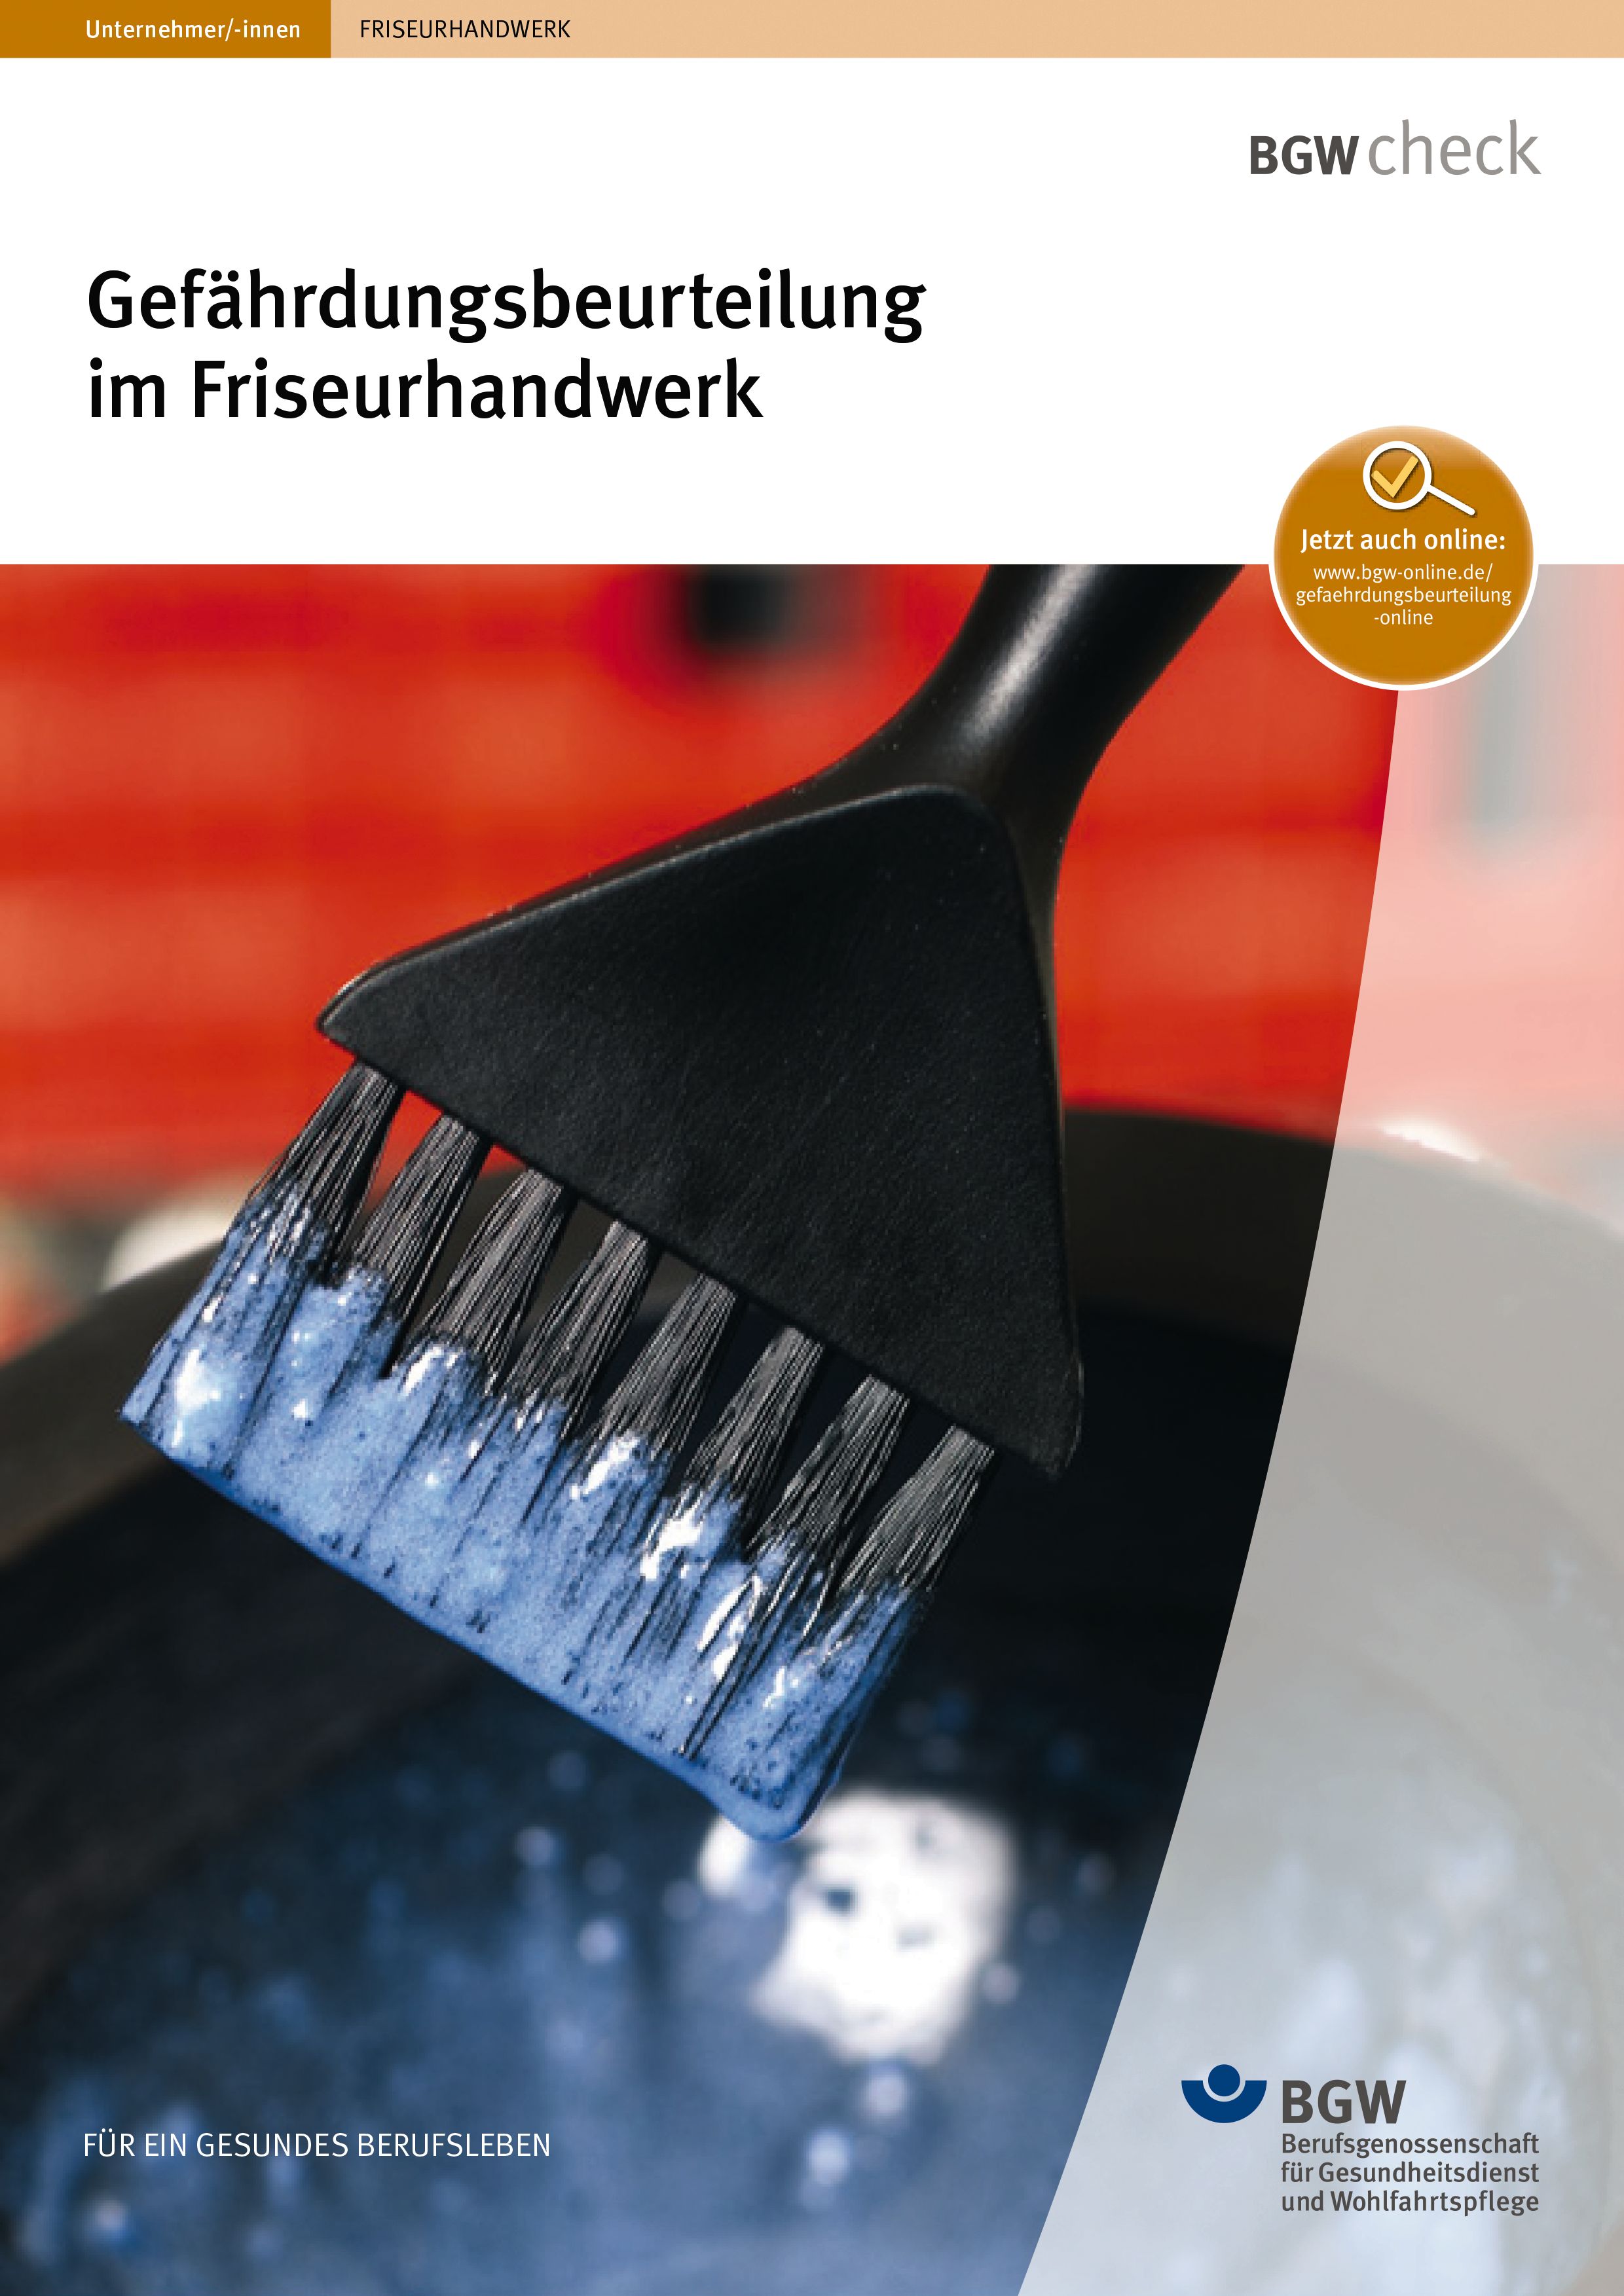 Titelbild: Gefährdungsbeurteilung im Friseurhandwerk - Farbpinsel in Farbflüssigkeit